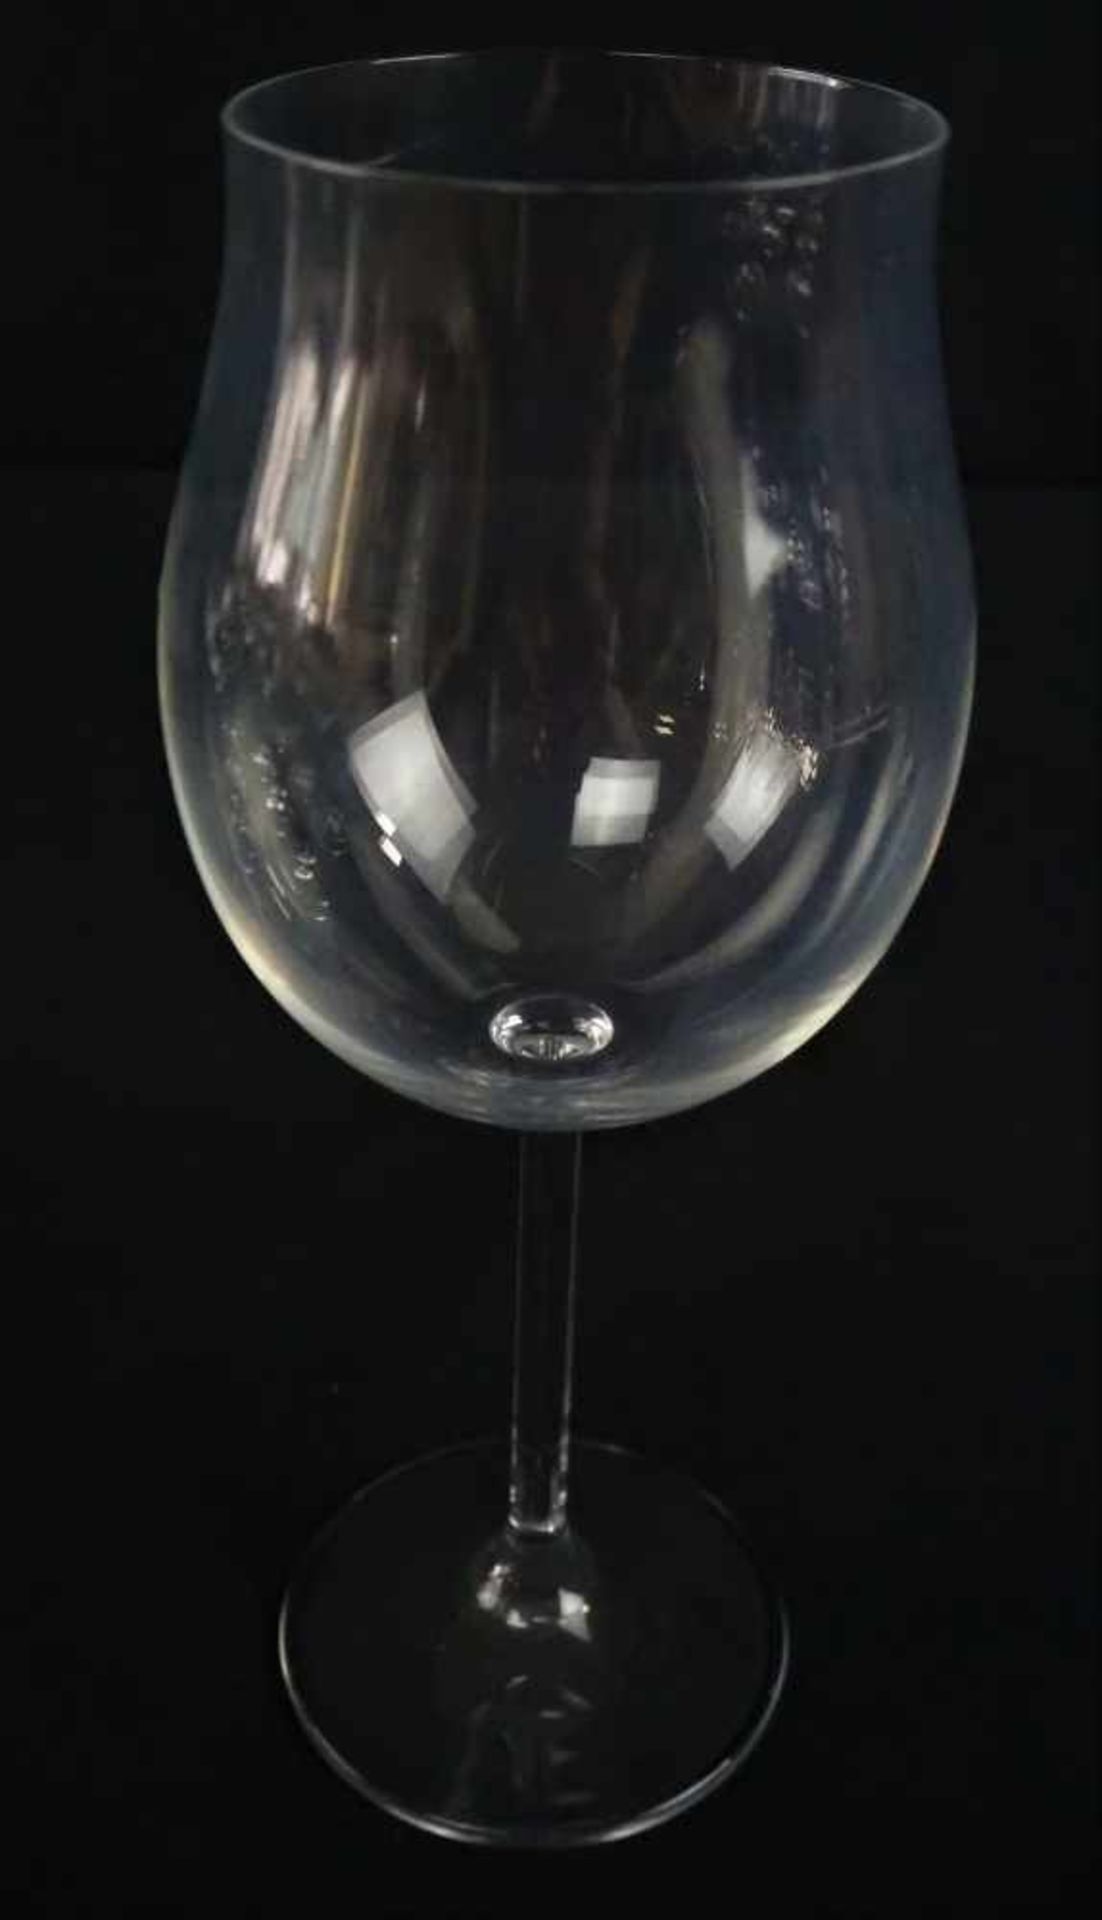 Satz klassischer Rotweingläser, 9Stück.Set of classic red wine glasses, 9 pieces- - -21.01 % buyer's - Bild 2 aus 2